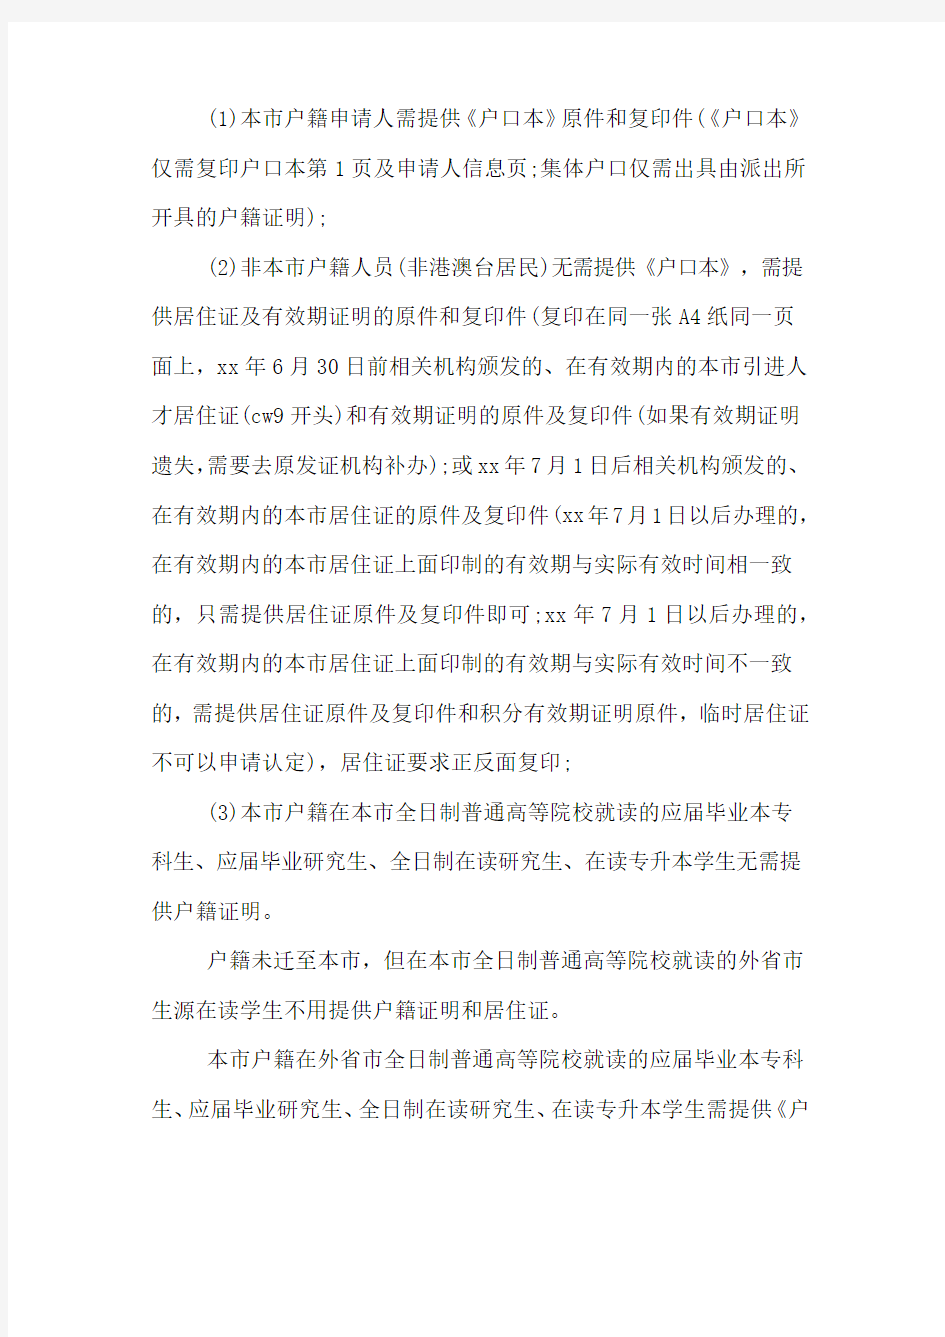 2019年上海教师资格证认定现场所需材料